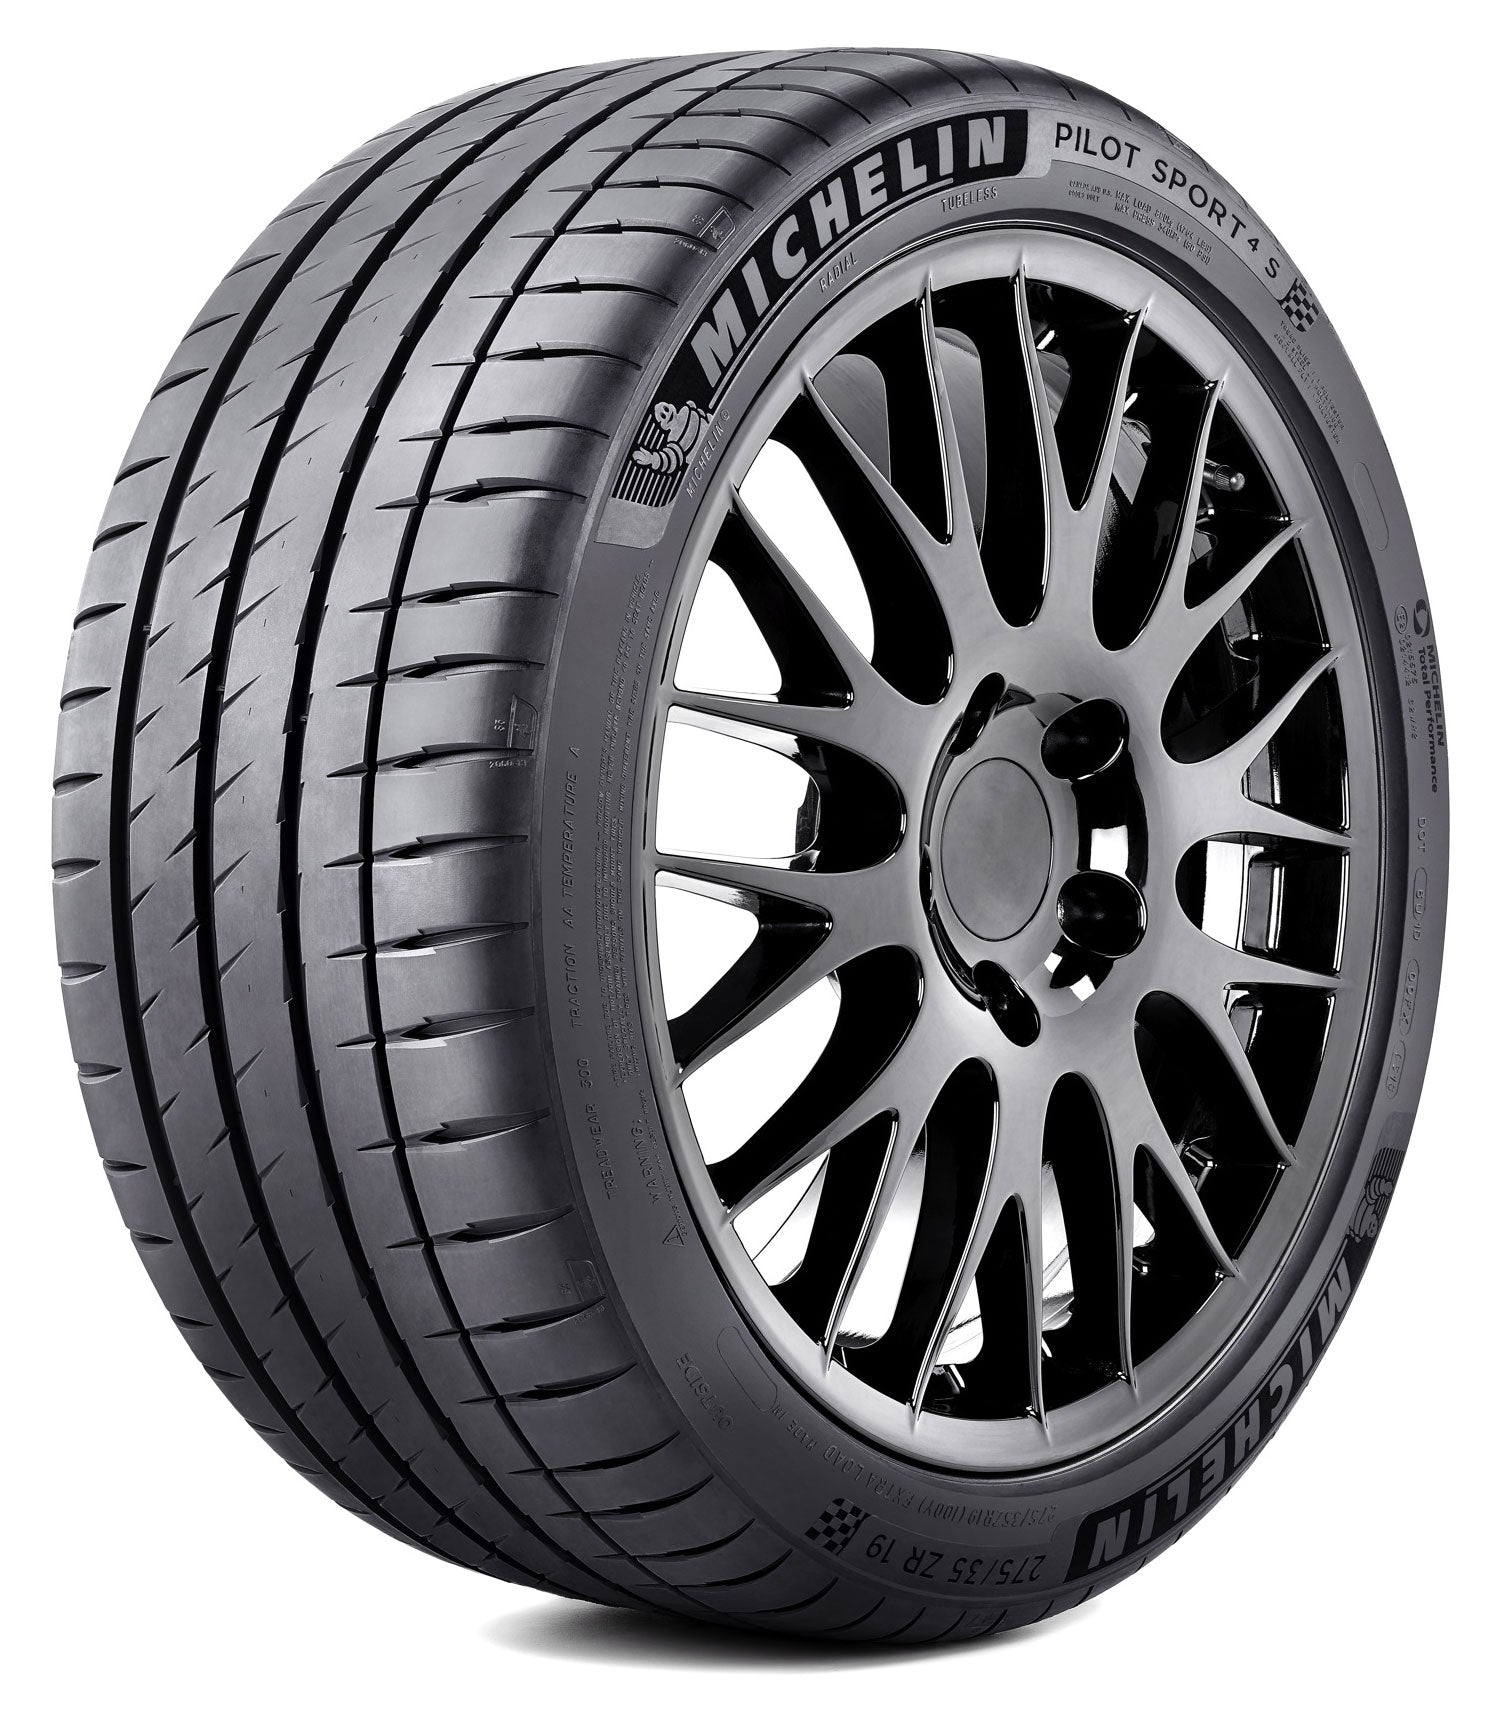 Michelin Pilot Sport 4s 245/35R20 95Y XL - MODE Auto Concepts